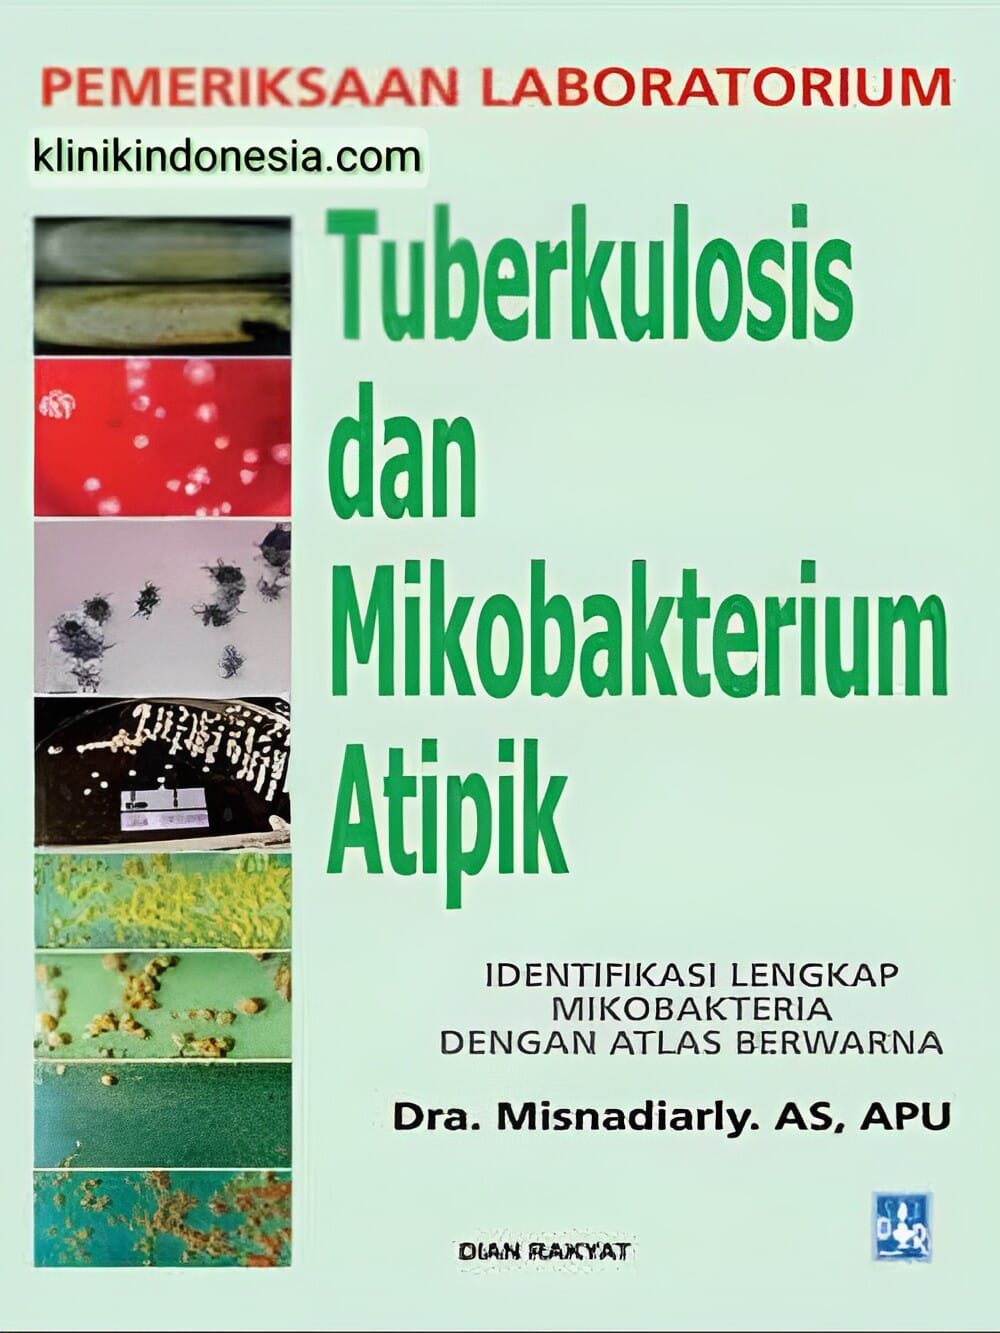 Gambar Pemeriksaan Laboratorium Tuberkulosis dan Mikobakterium Atipik